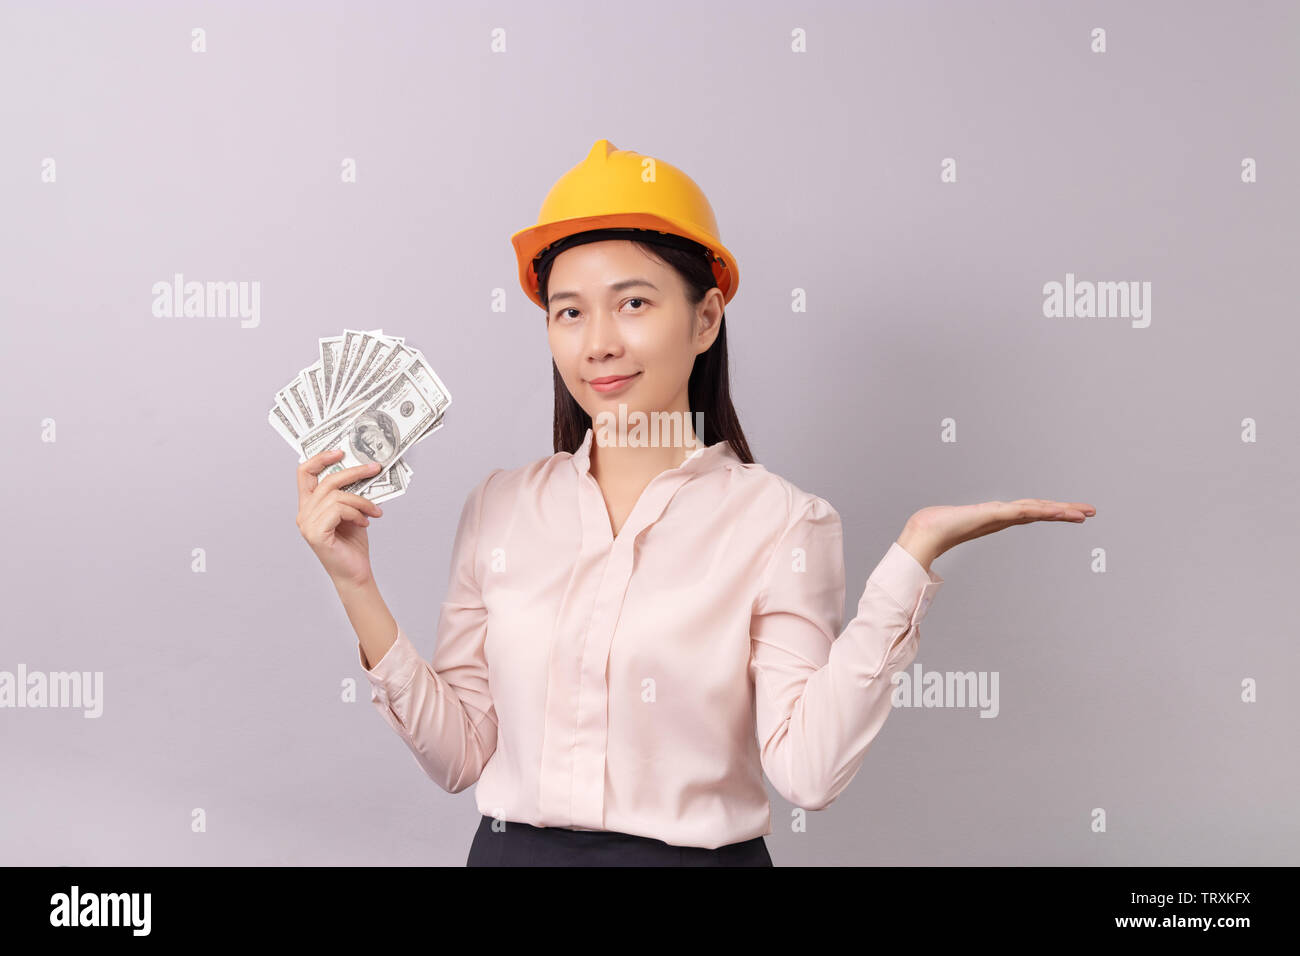 Kredite für Immobilien Konzept, Frau mit gelben Helm Holding banknote Geld in der rechten Hand und die leere Handfläche der linken Hand geöffnet Stockfoto